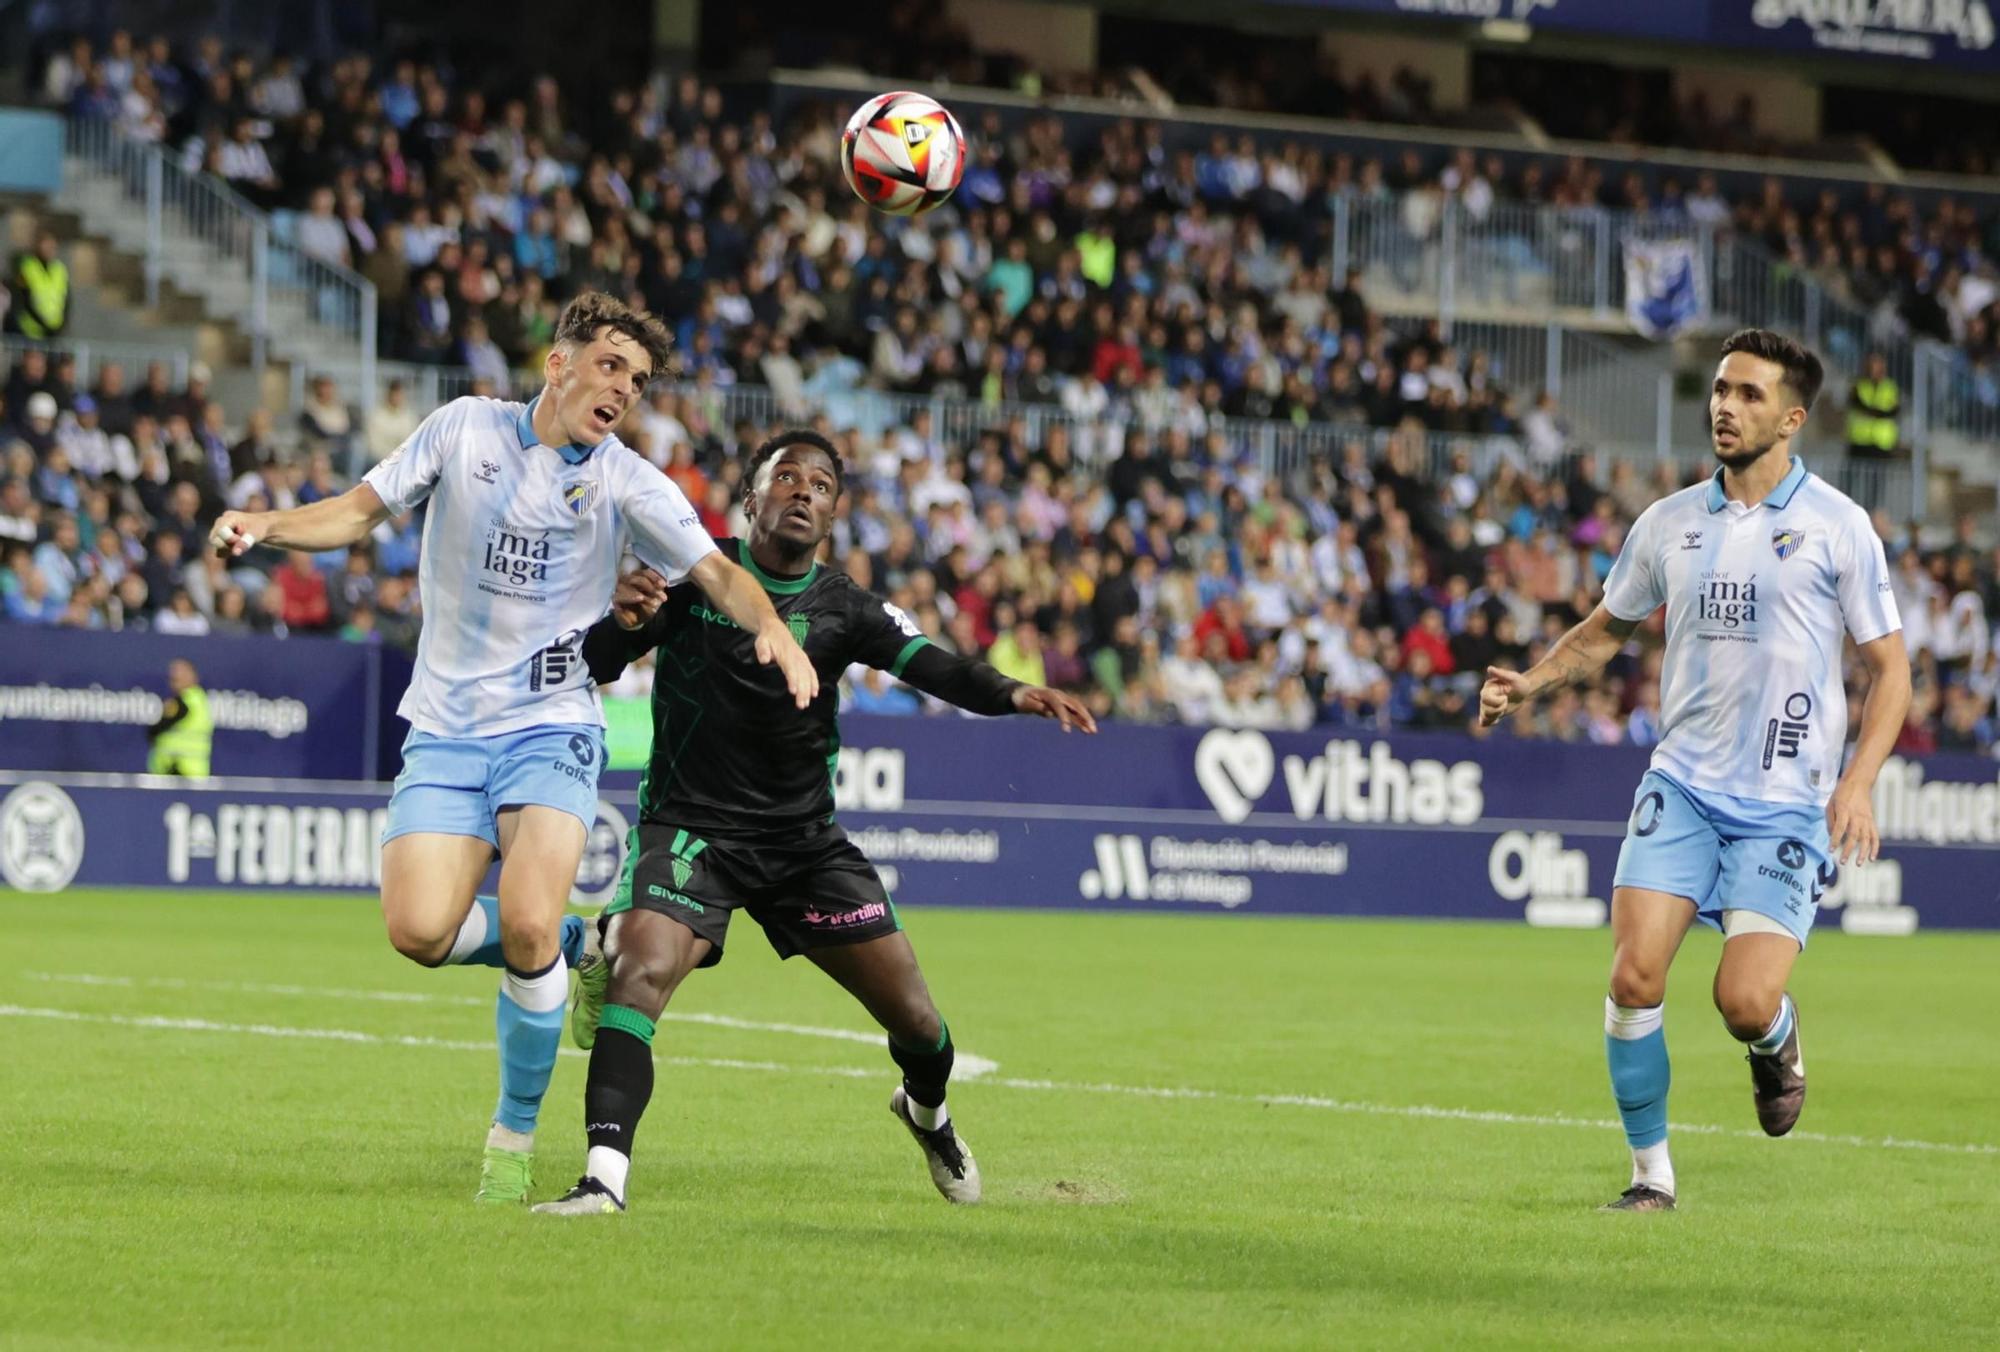 Málaga CF - Córdoba CF | Las imágenes del partido en La Rosaleda